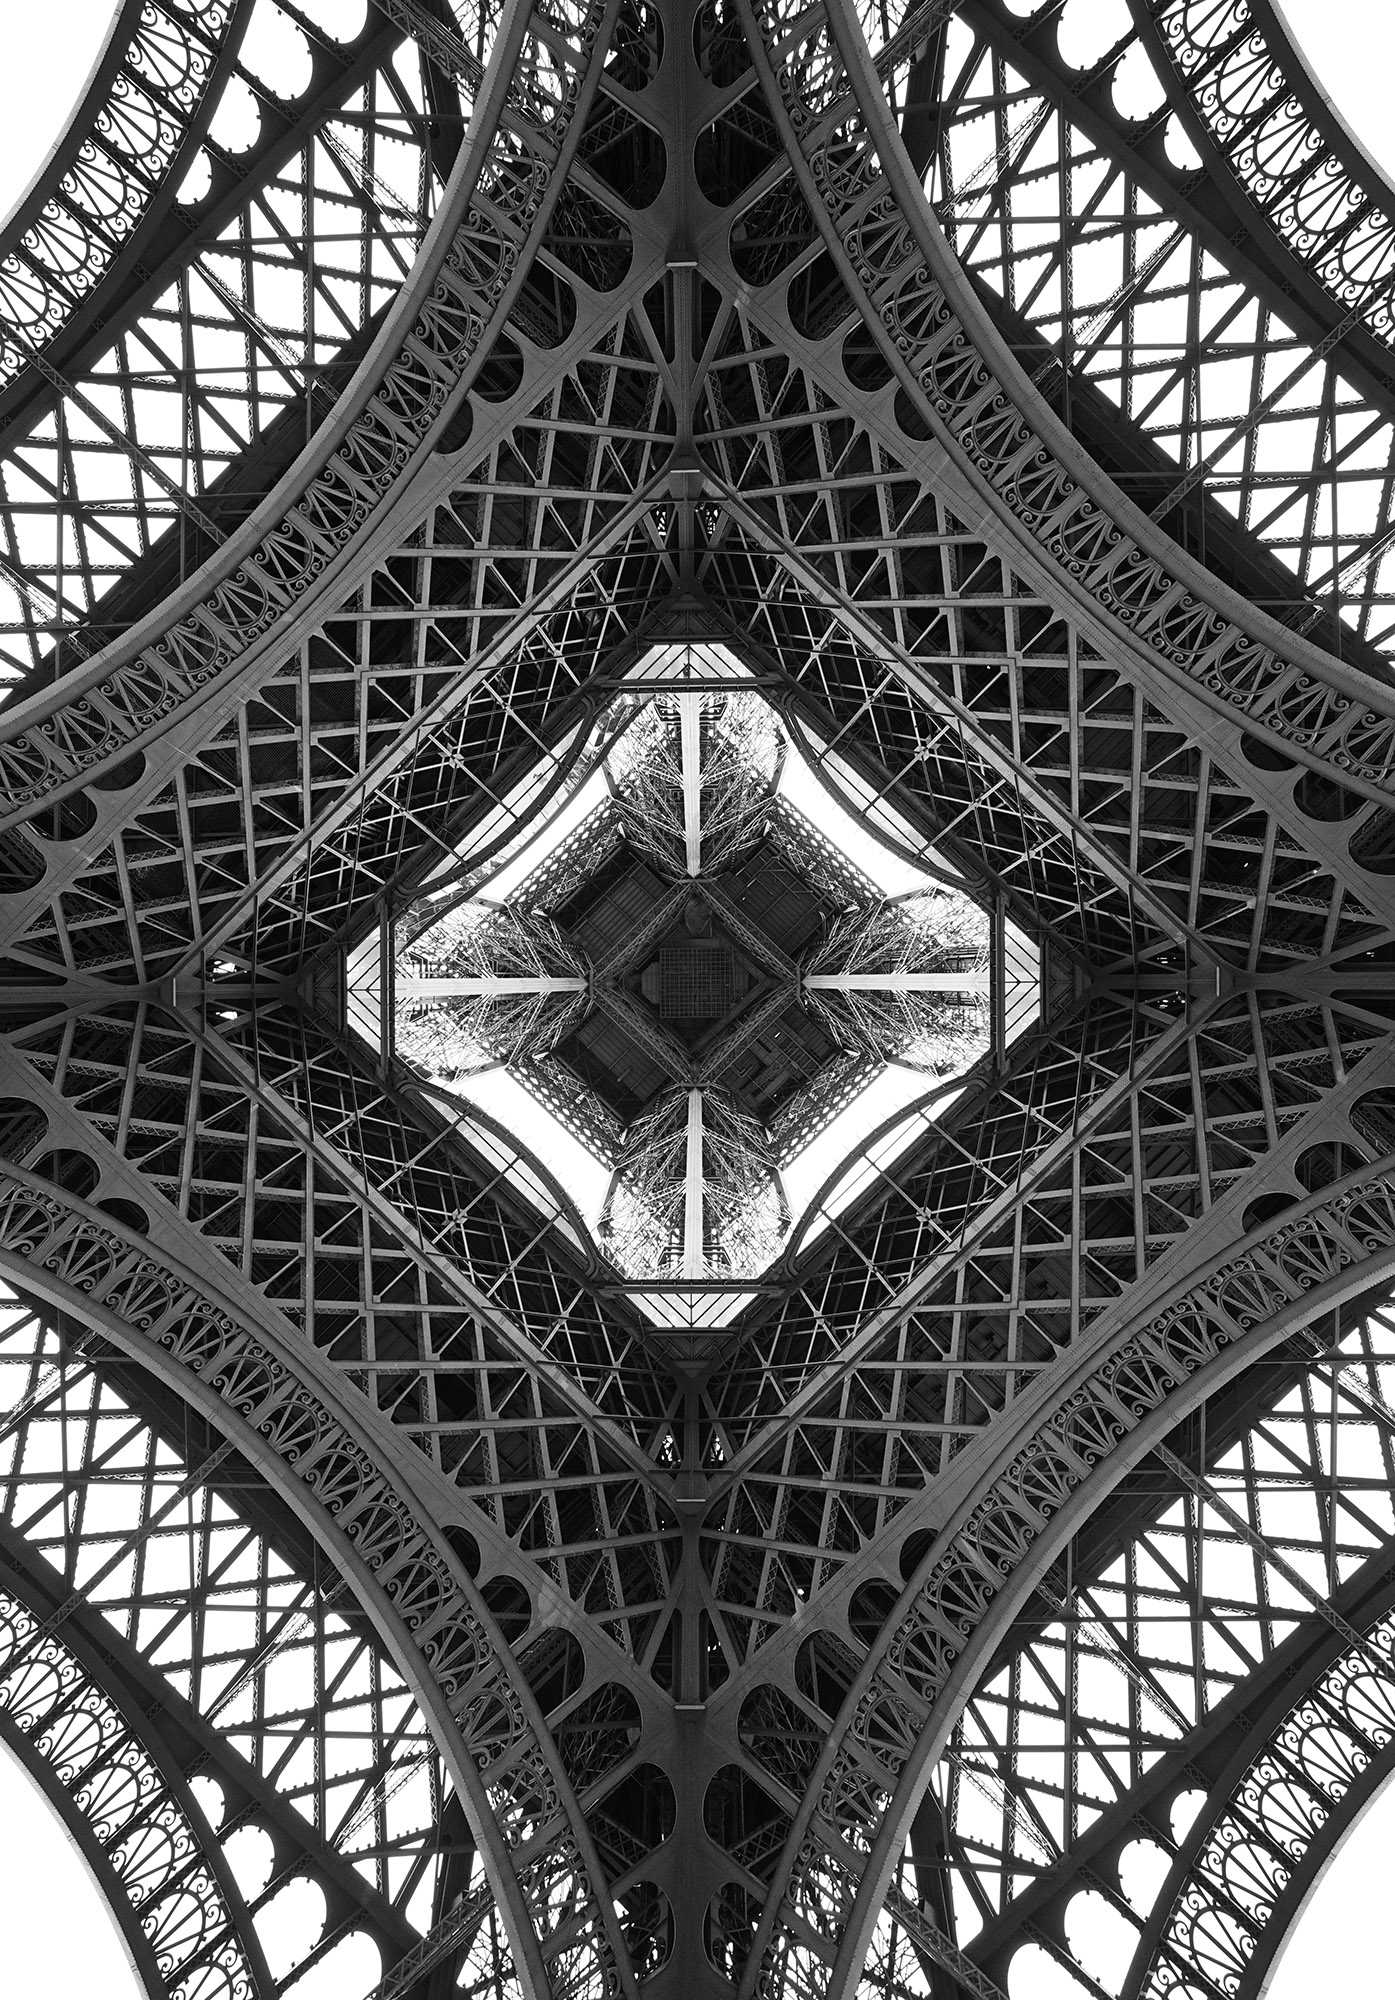 Eiffel Tower 12...